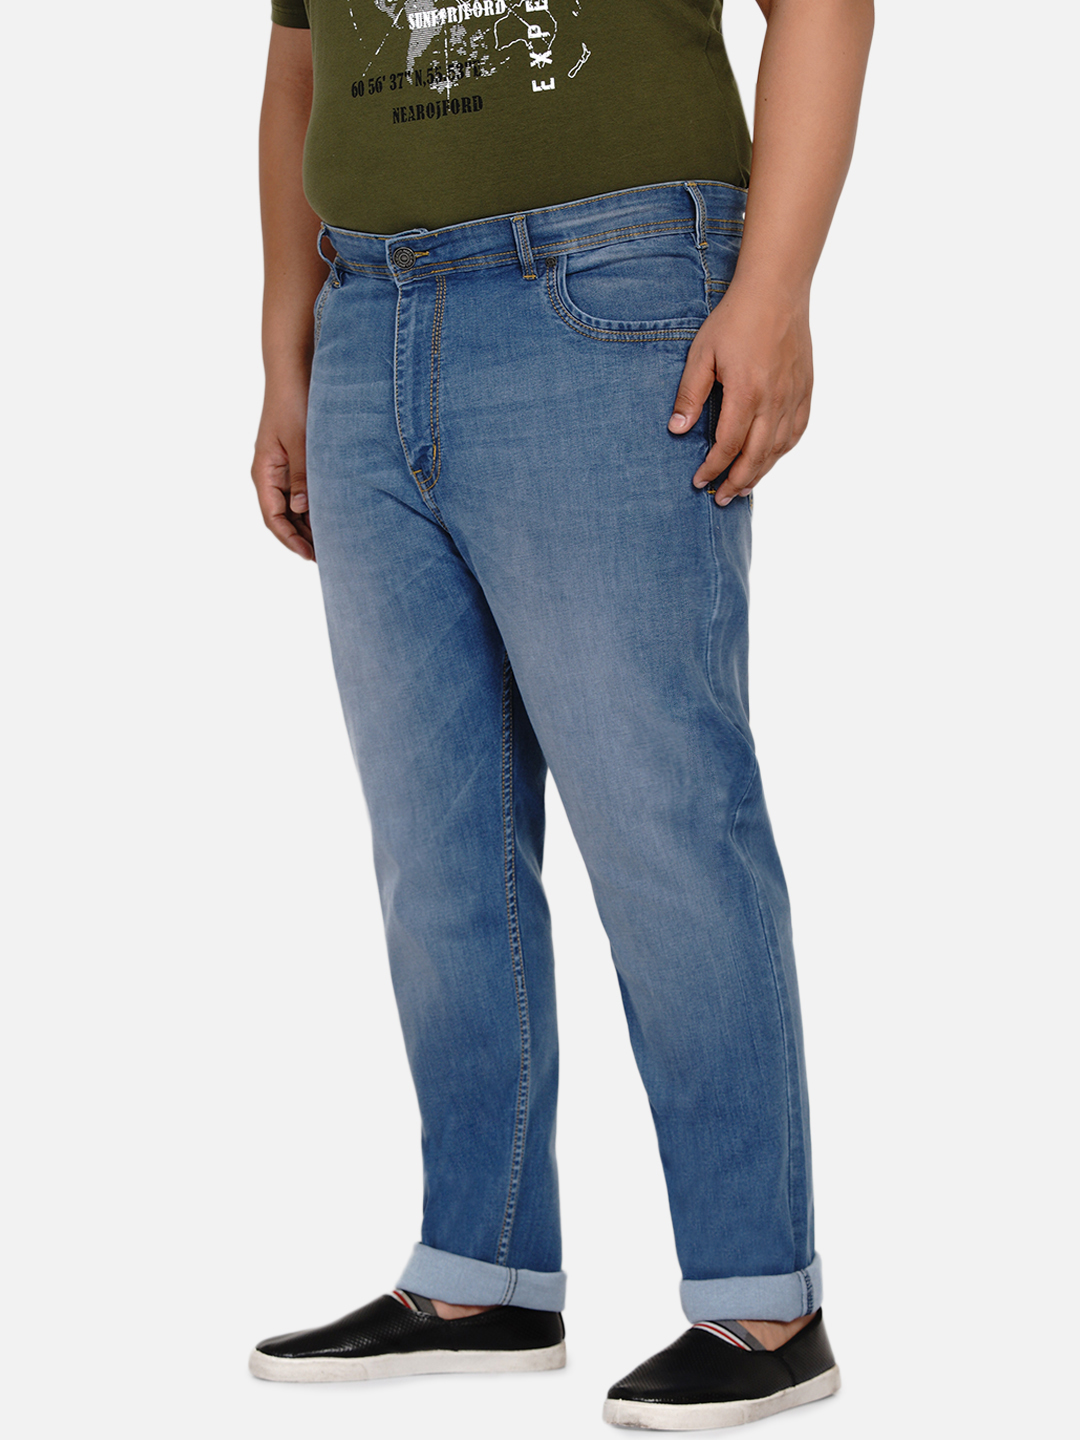 affordables/jeans/EJPJ2021/ejpj2021-5.jpg